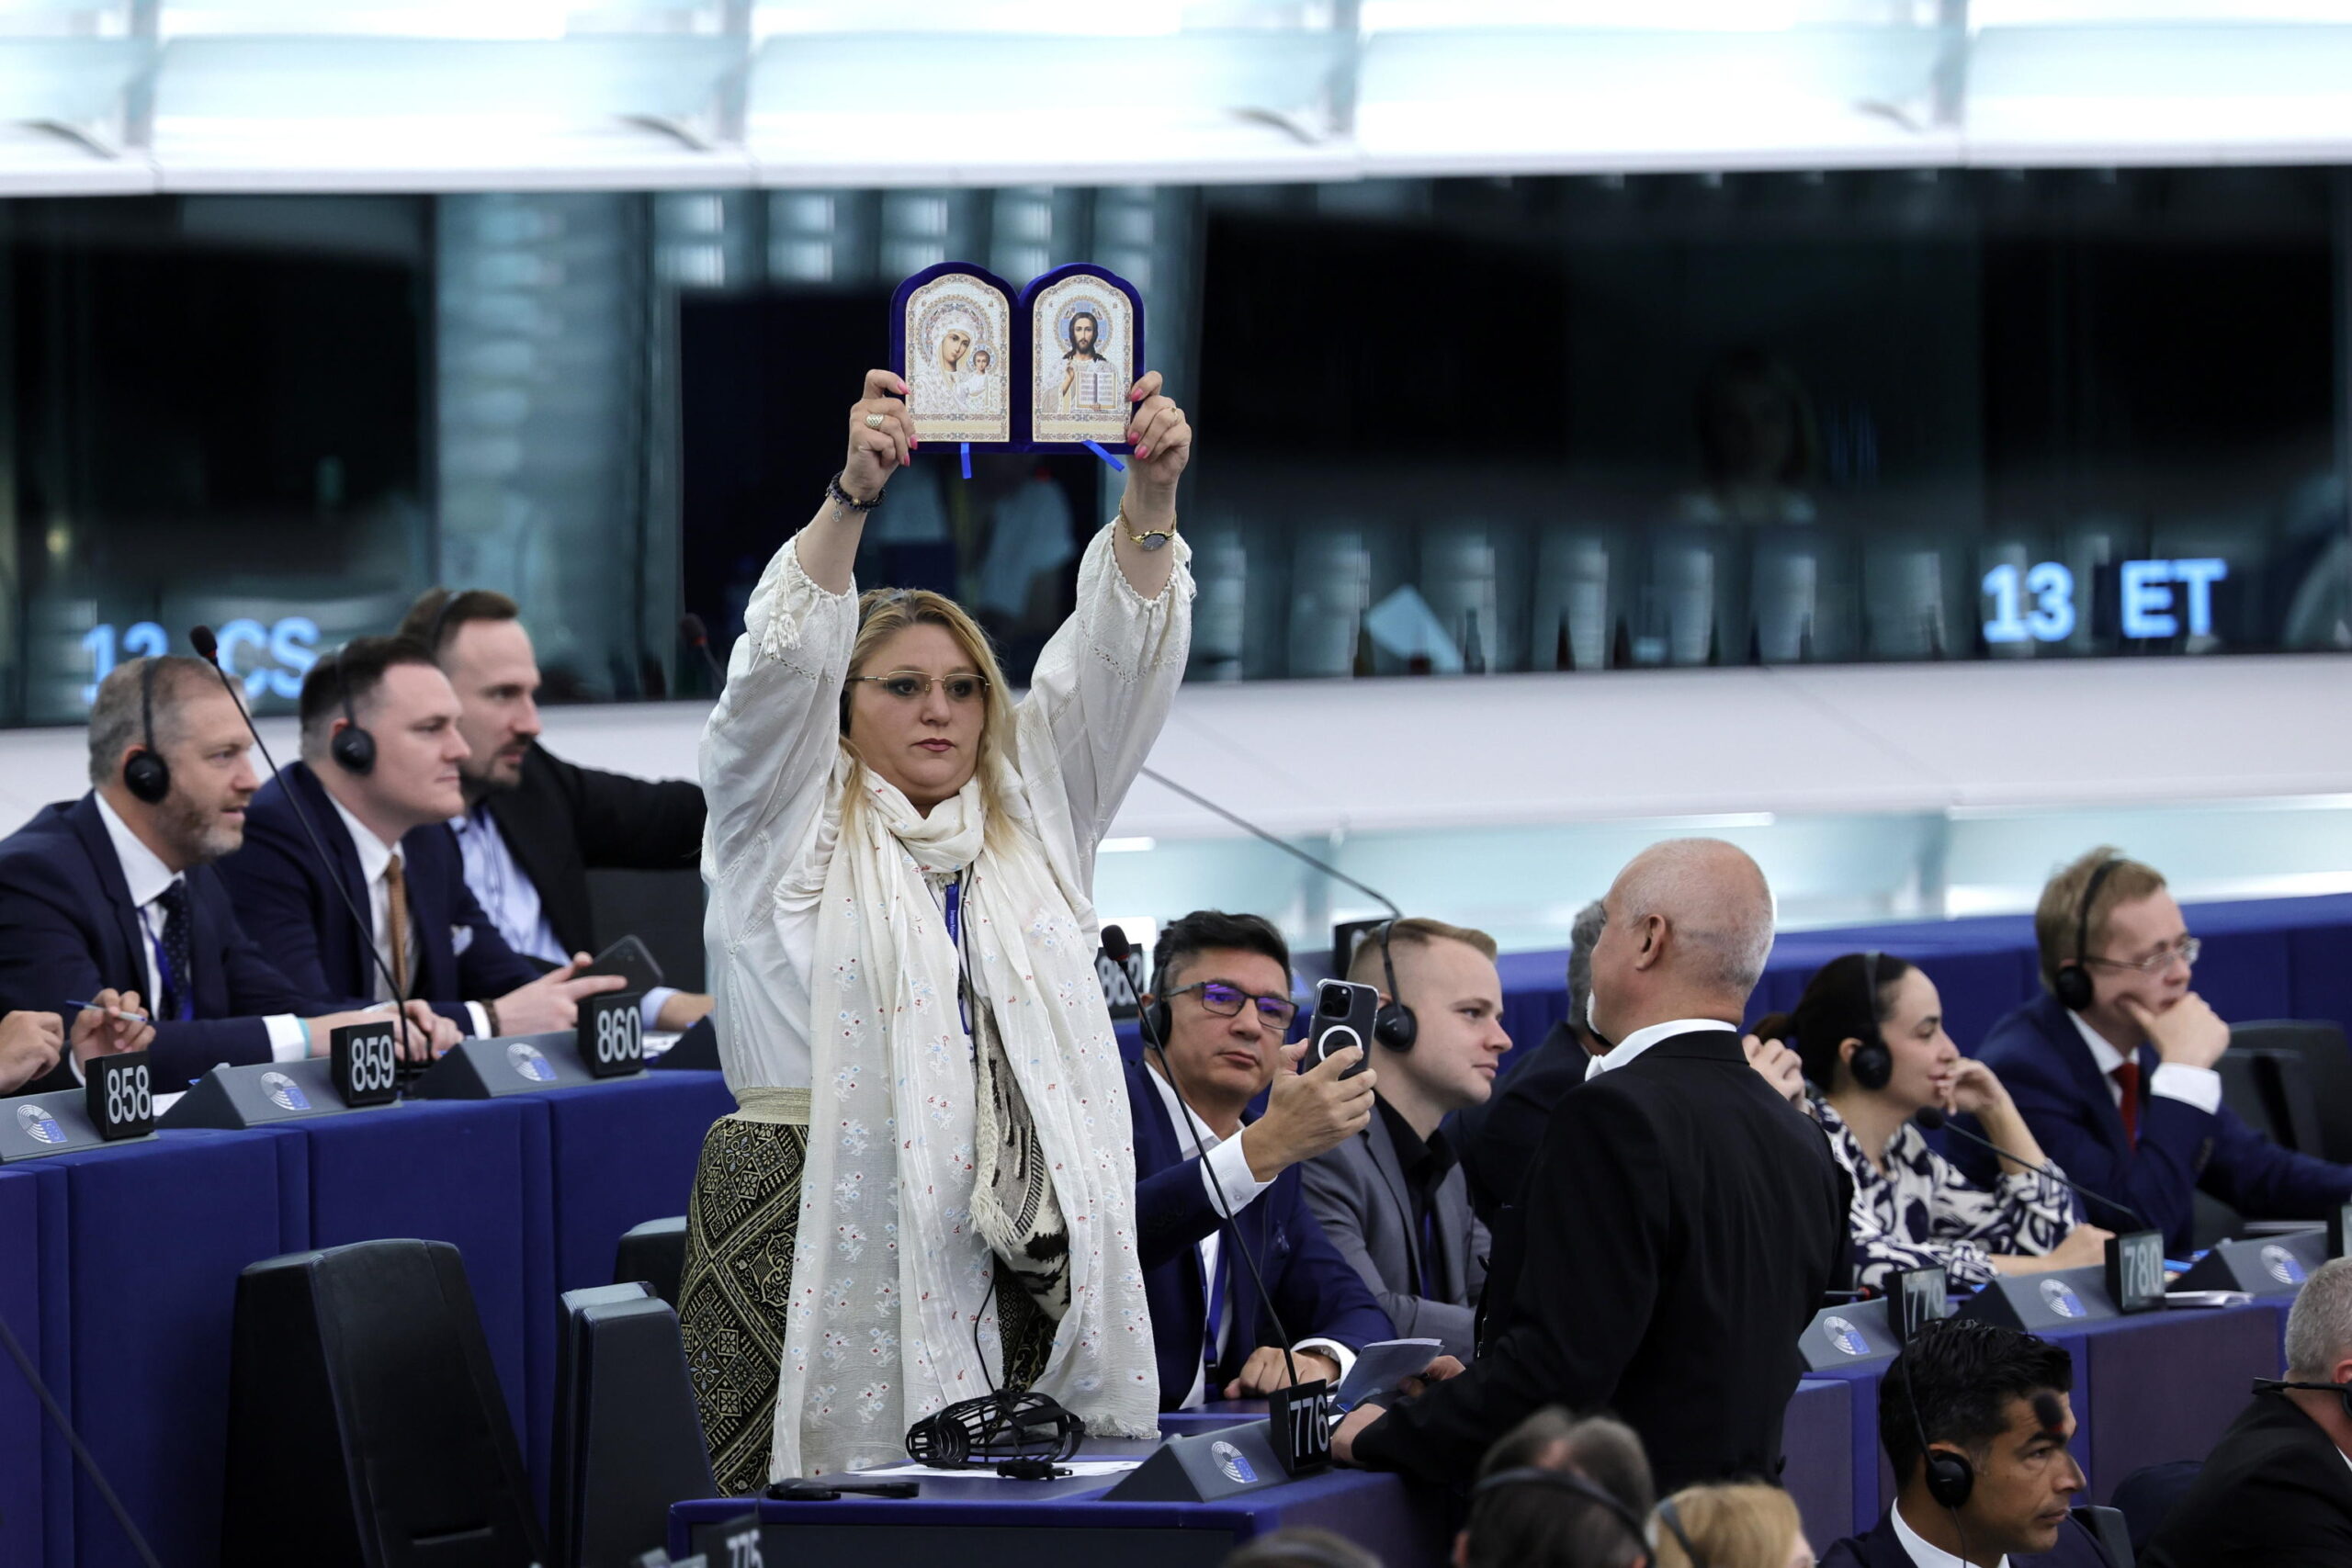 O Parlamento Europeu expulsou o deputado romeno de extrema direita: protestando com uma máscara e gritando “Acreditamos em Deus” – vídeo